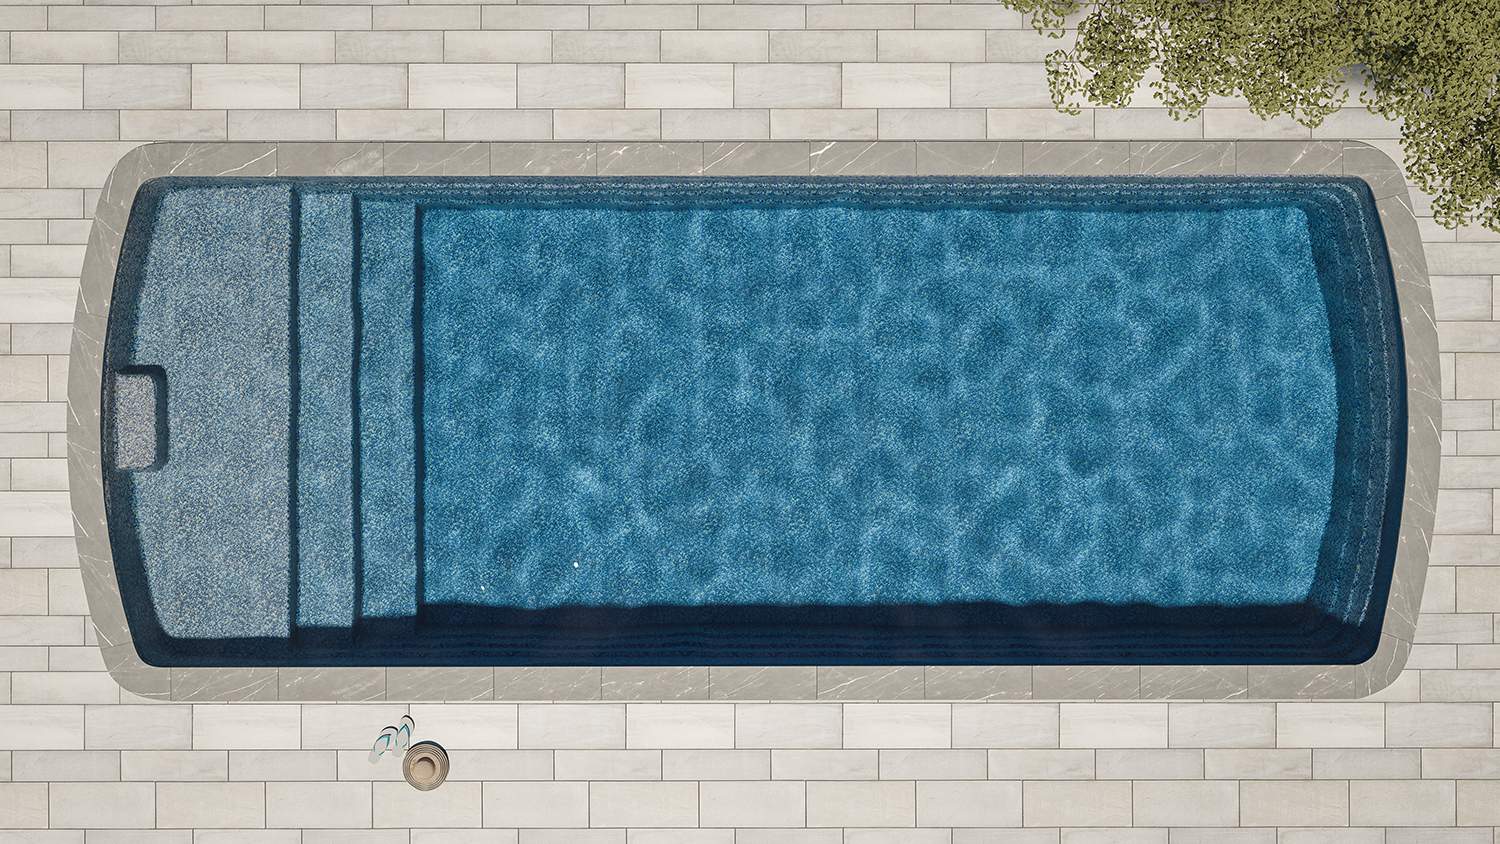 Fiberglass pool ocean gray color